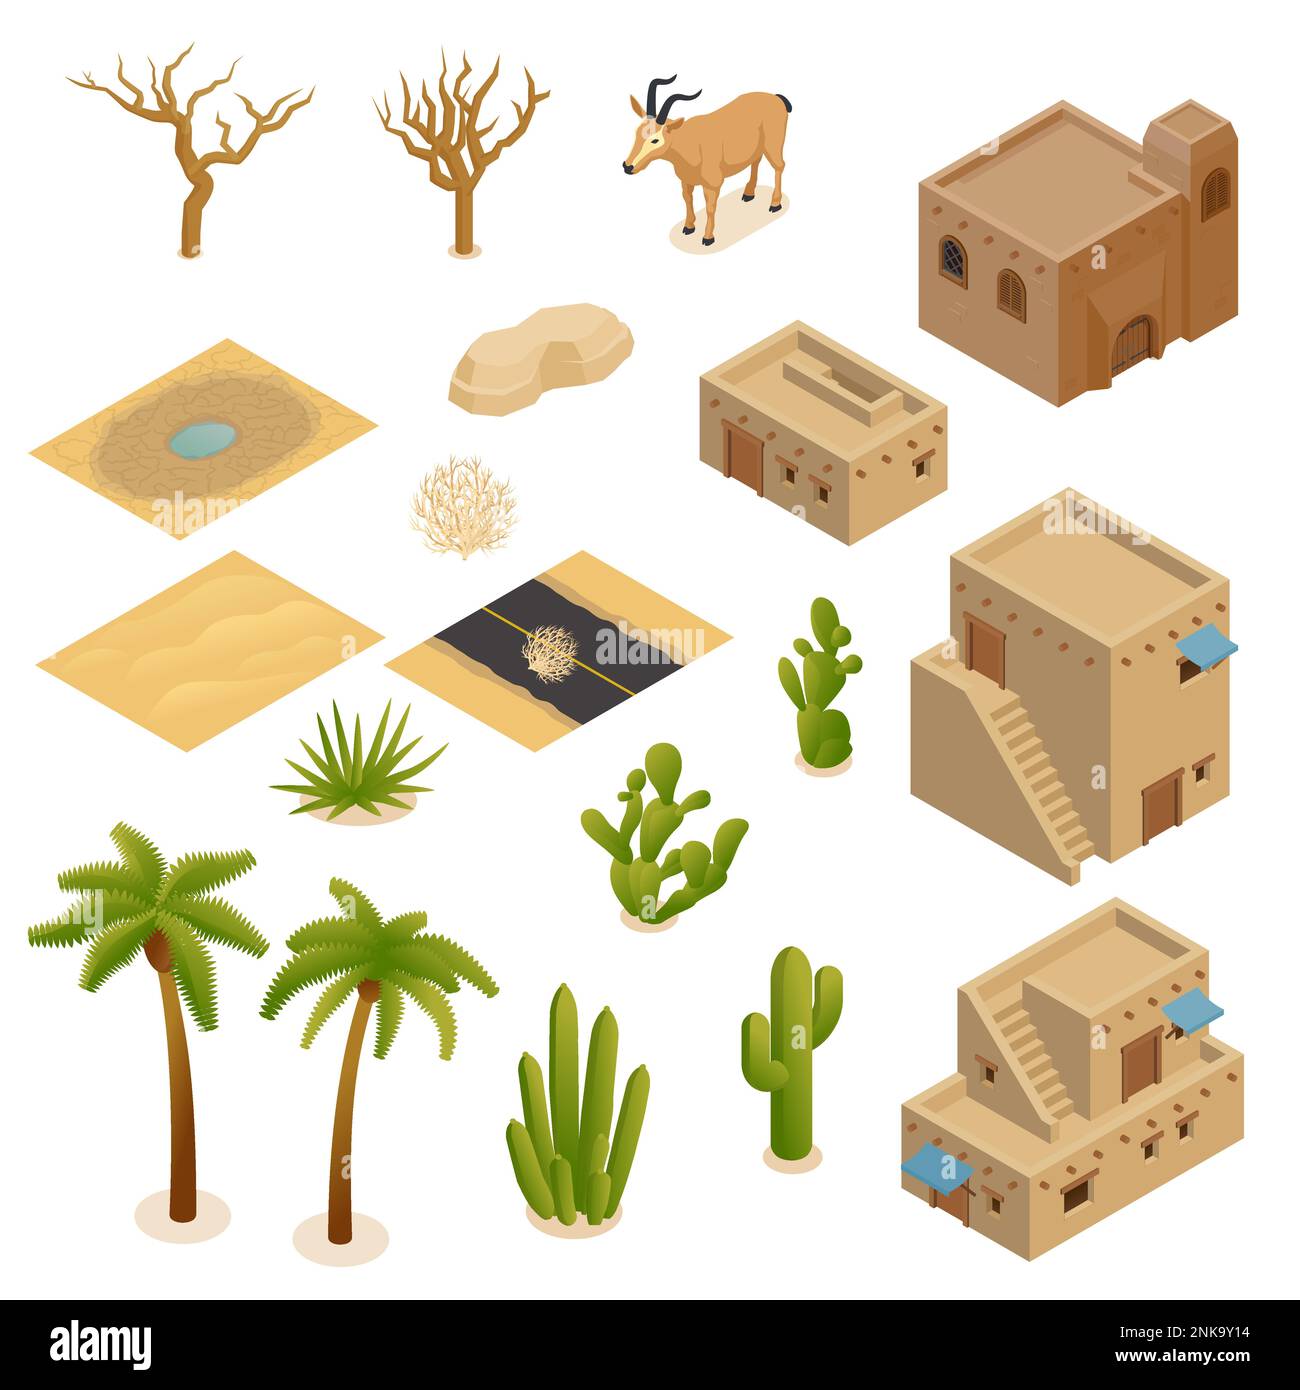 Paysage désertique ensemble isométrique de brique de boue bâtiments plantes animaux habitudes adaptées pour le climat chaud aride illustration de vecteur isolé Illustration de Vecteur